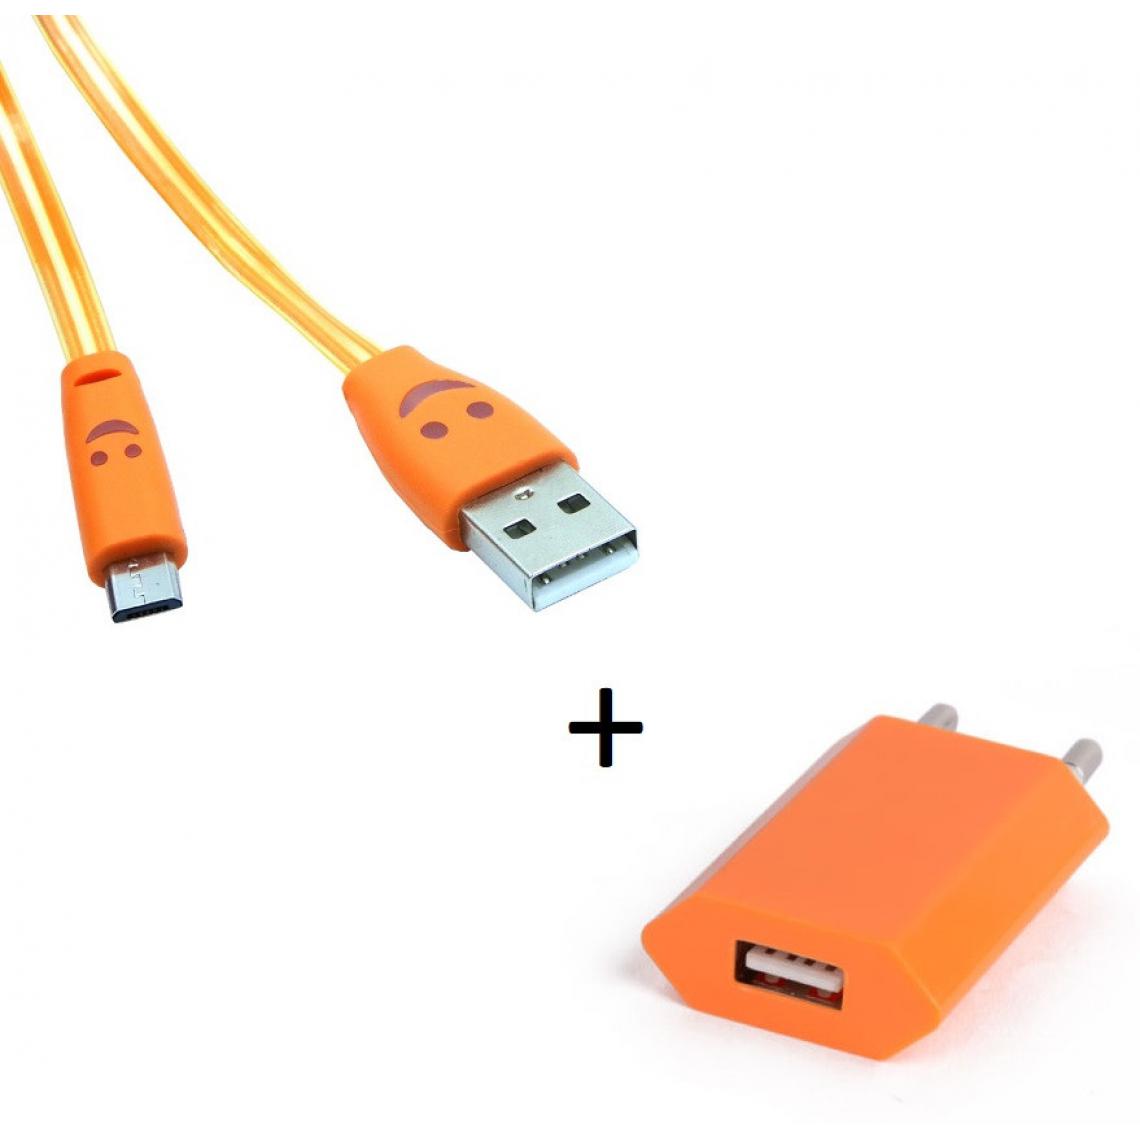 Shot - Pack Chargeur pour JBL Flip 3 Smartphone Micro USB (Cable Smiley LED + Prise Secteur USB) Android (ORANGE) - Chargeur secteur téléphone